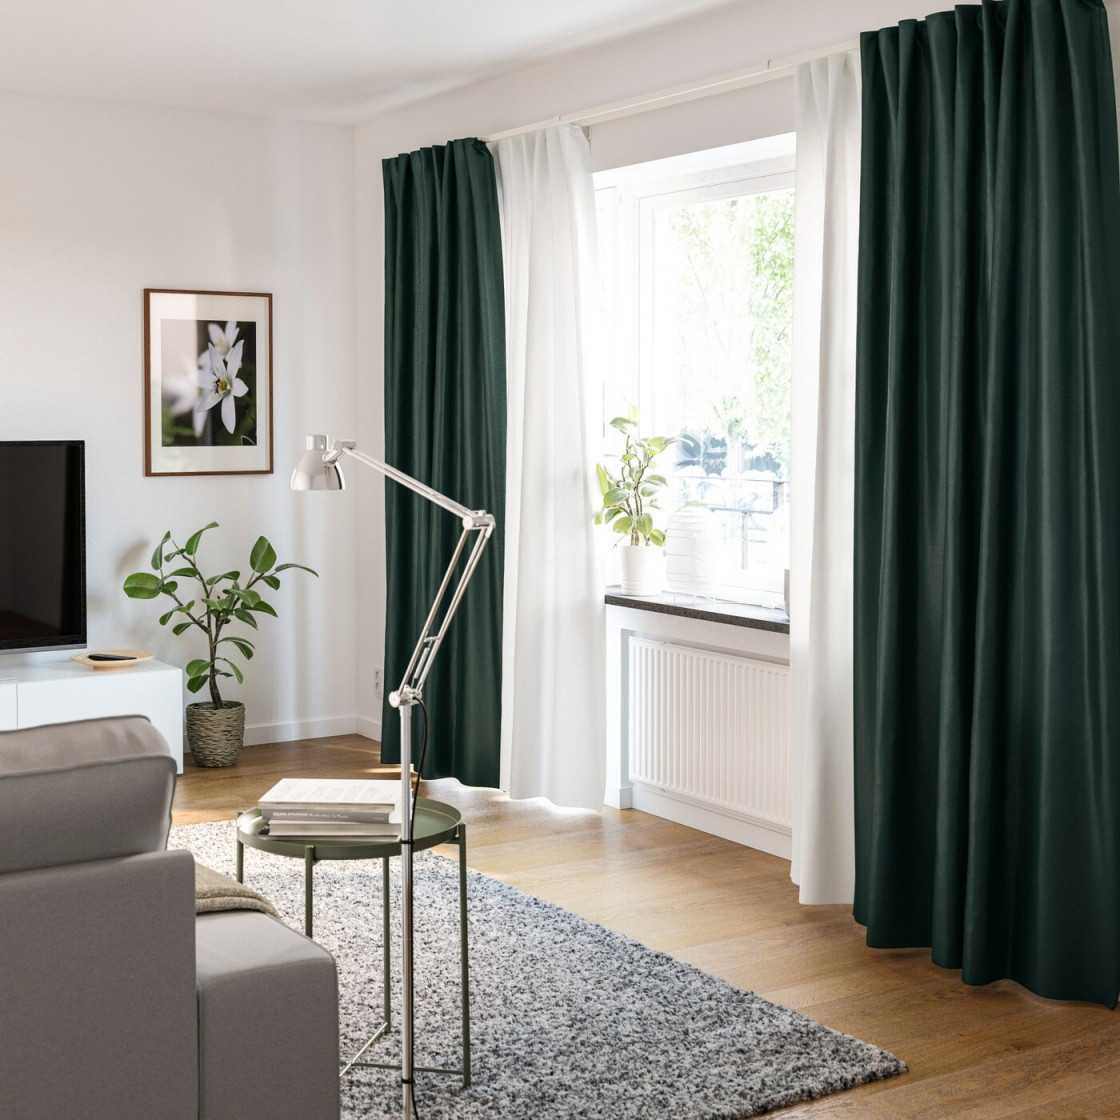 Gardinenideen Inspirationen Für Dein Zuhause  Ikea von Wohnzimmer Gardinen Ideen Bild